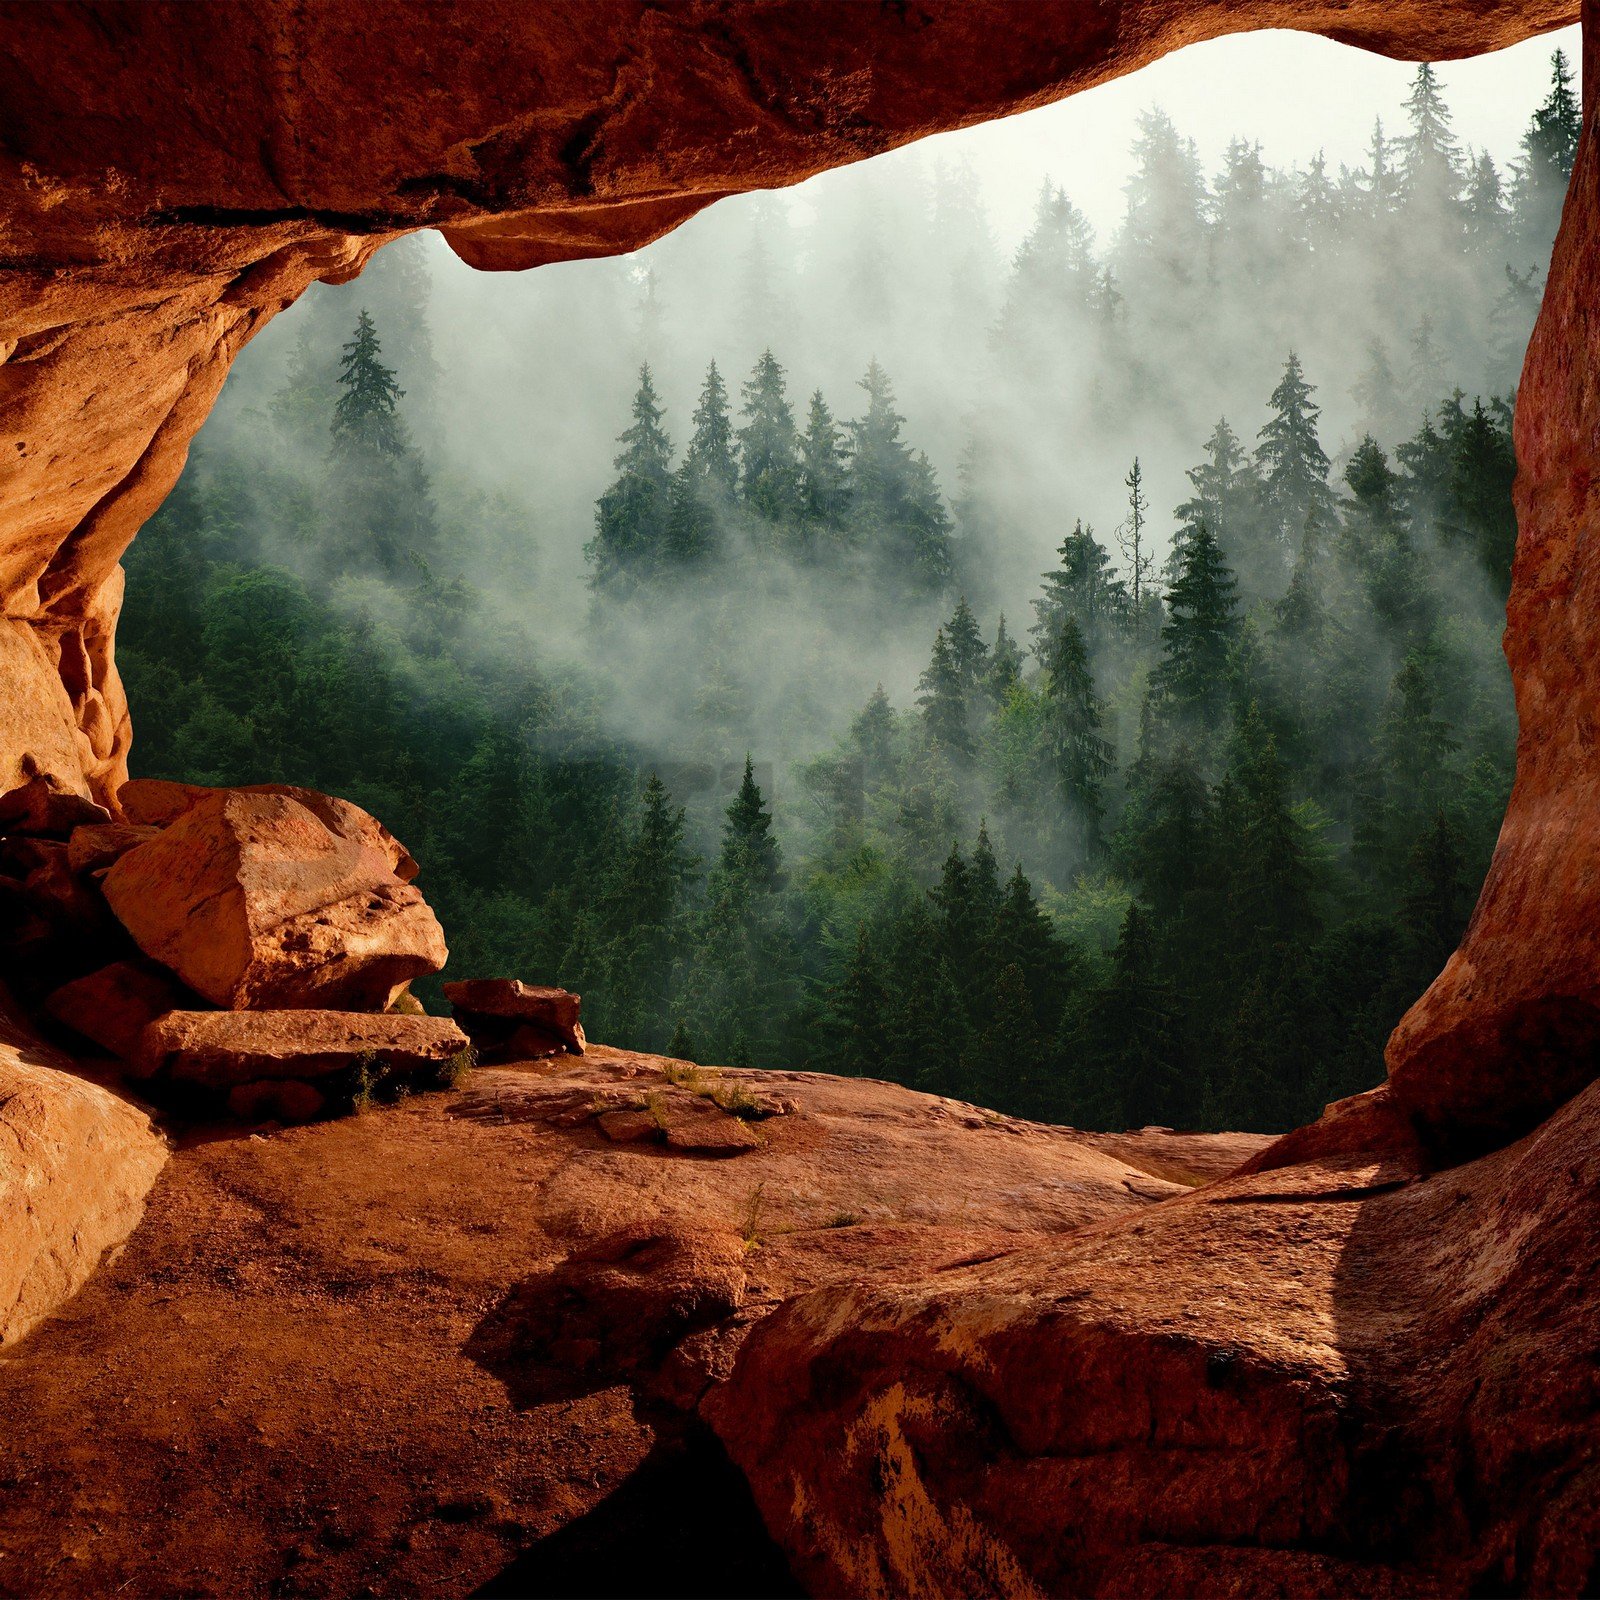 Vlies fotótapéta: Egy barlang az erdő mellett - 254x184 cm